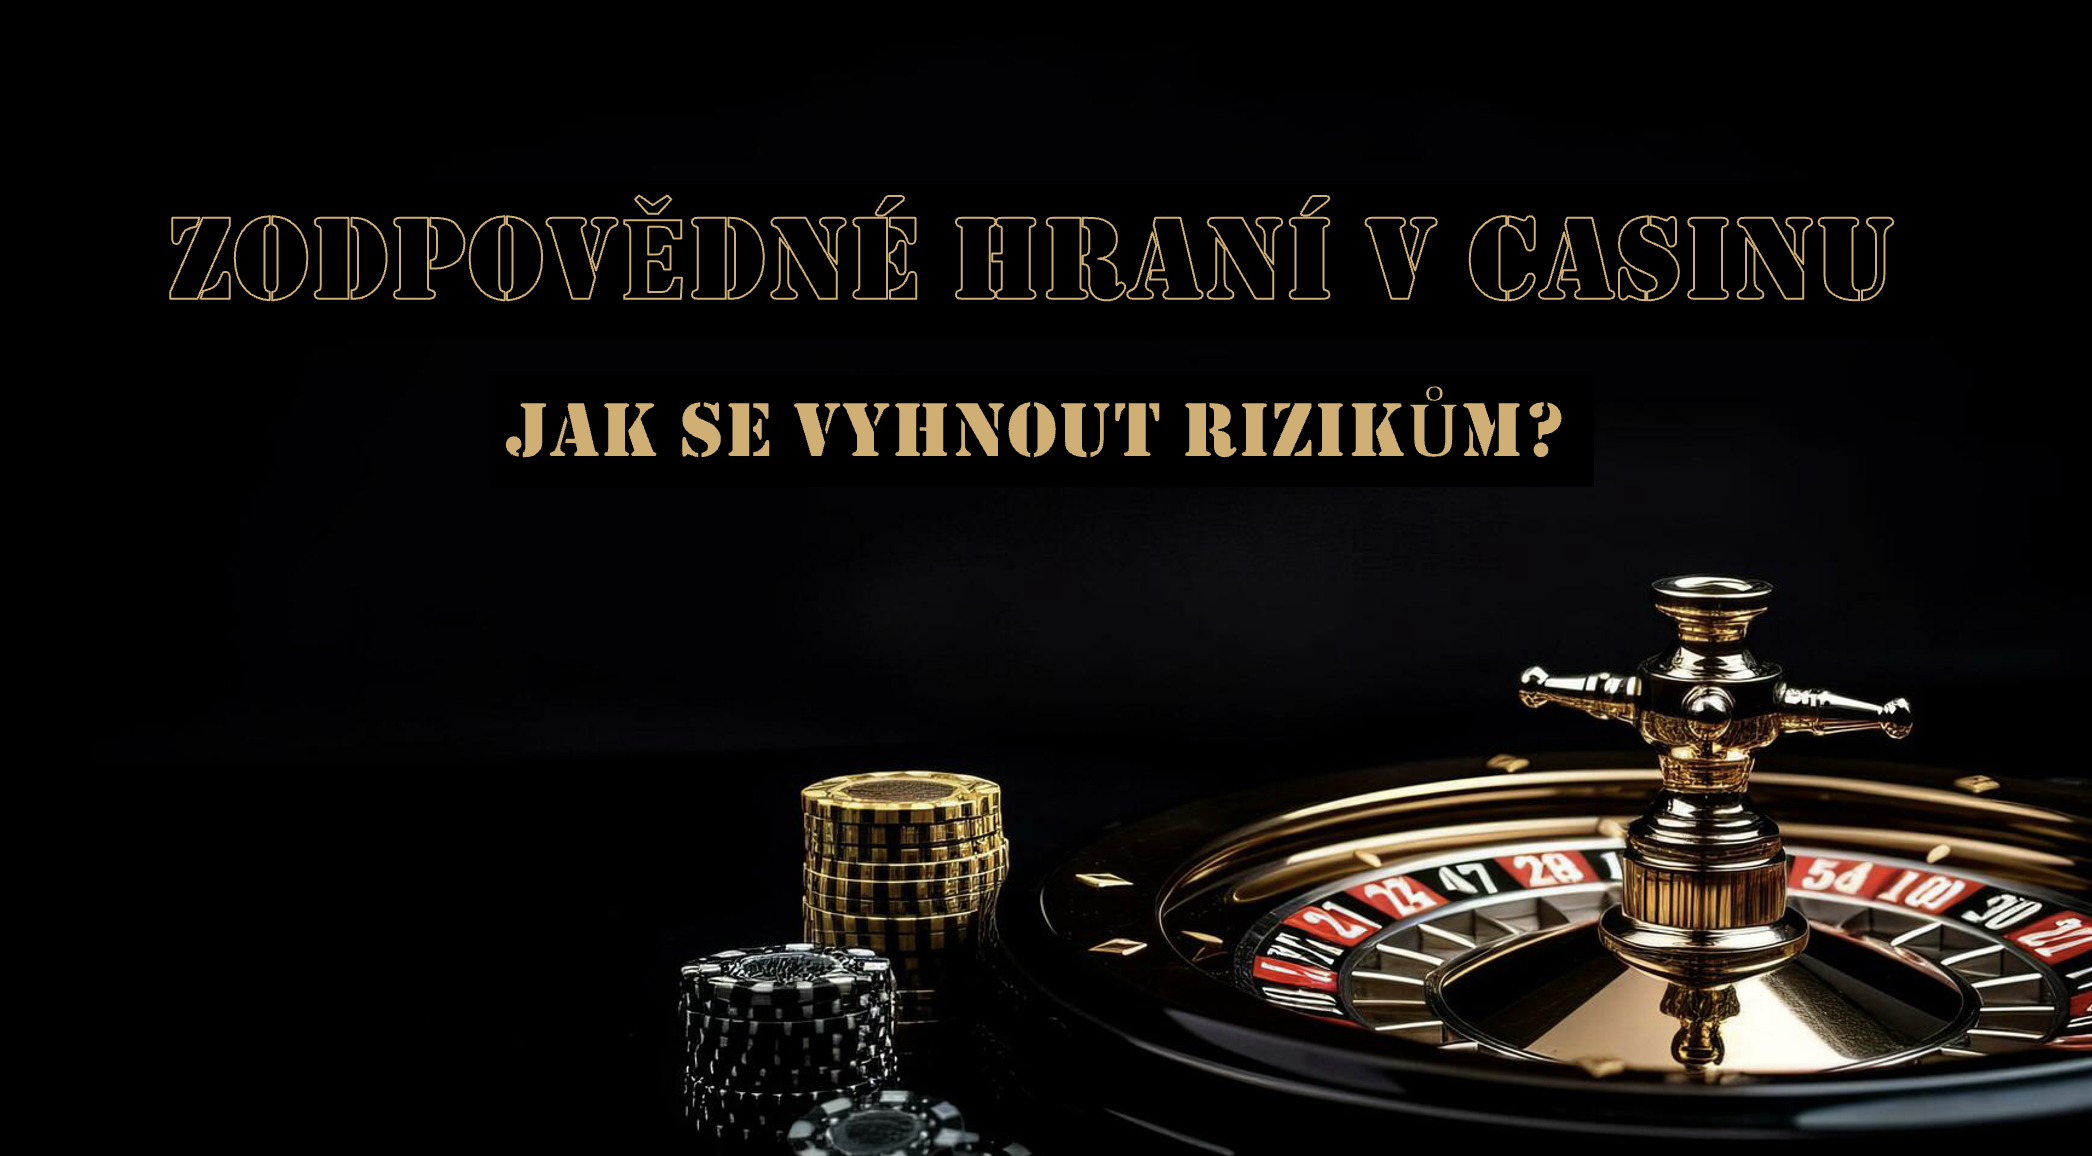 Zodpovědné hraní v kasinu s minimálním vkladem: Jak se vyhnout rizikům?